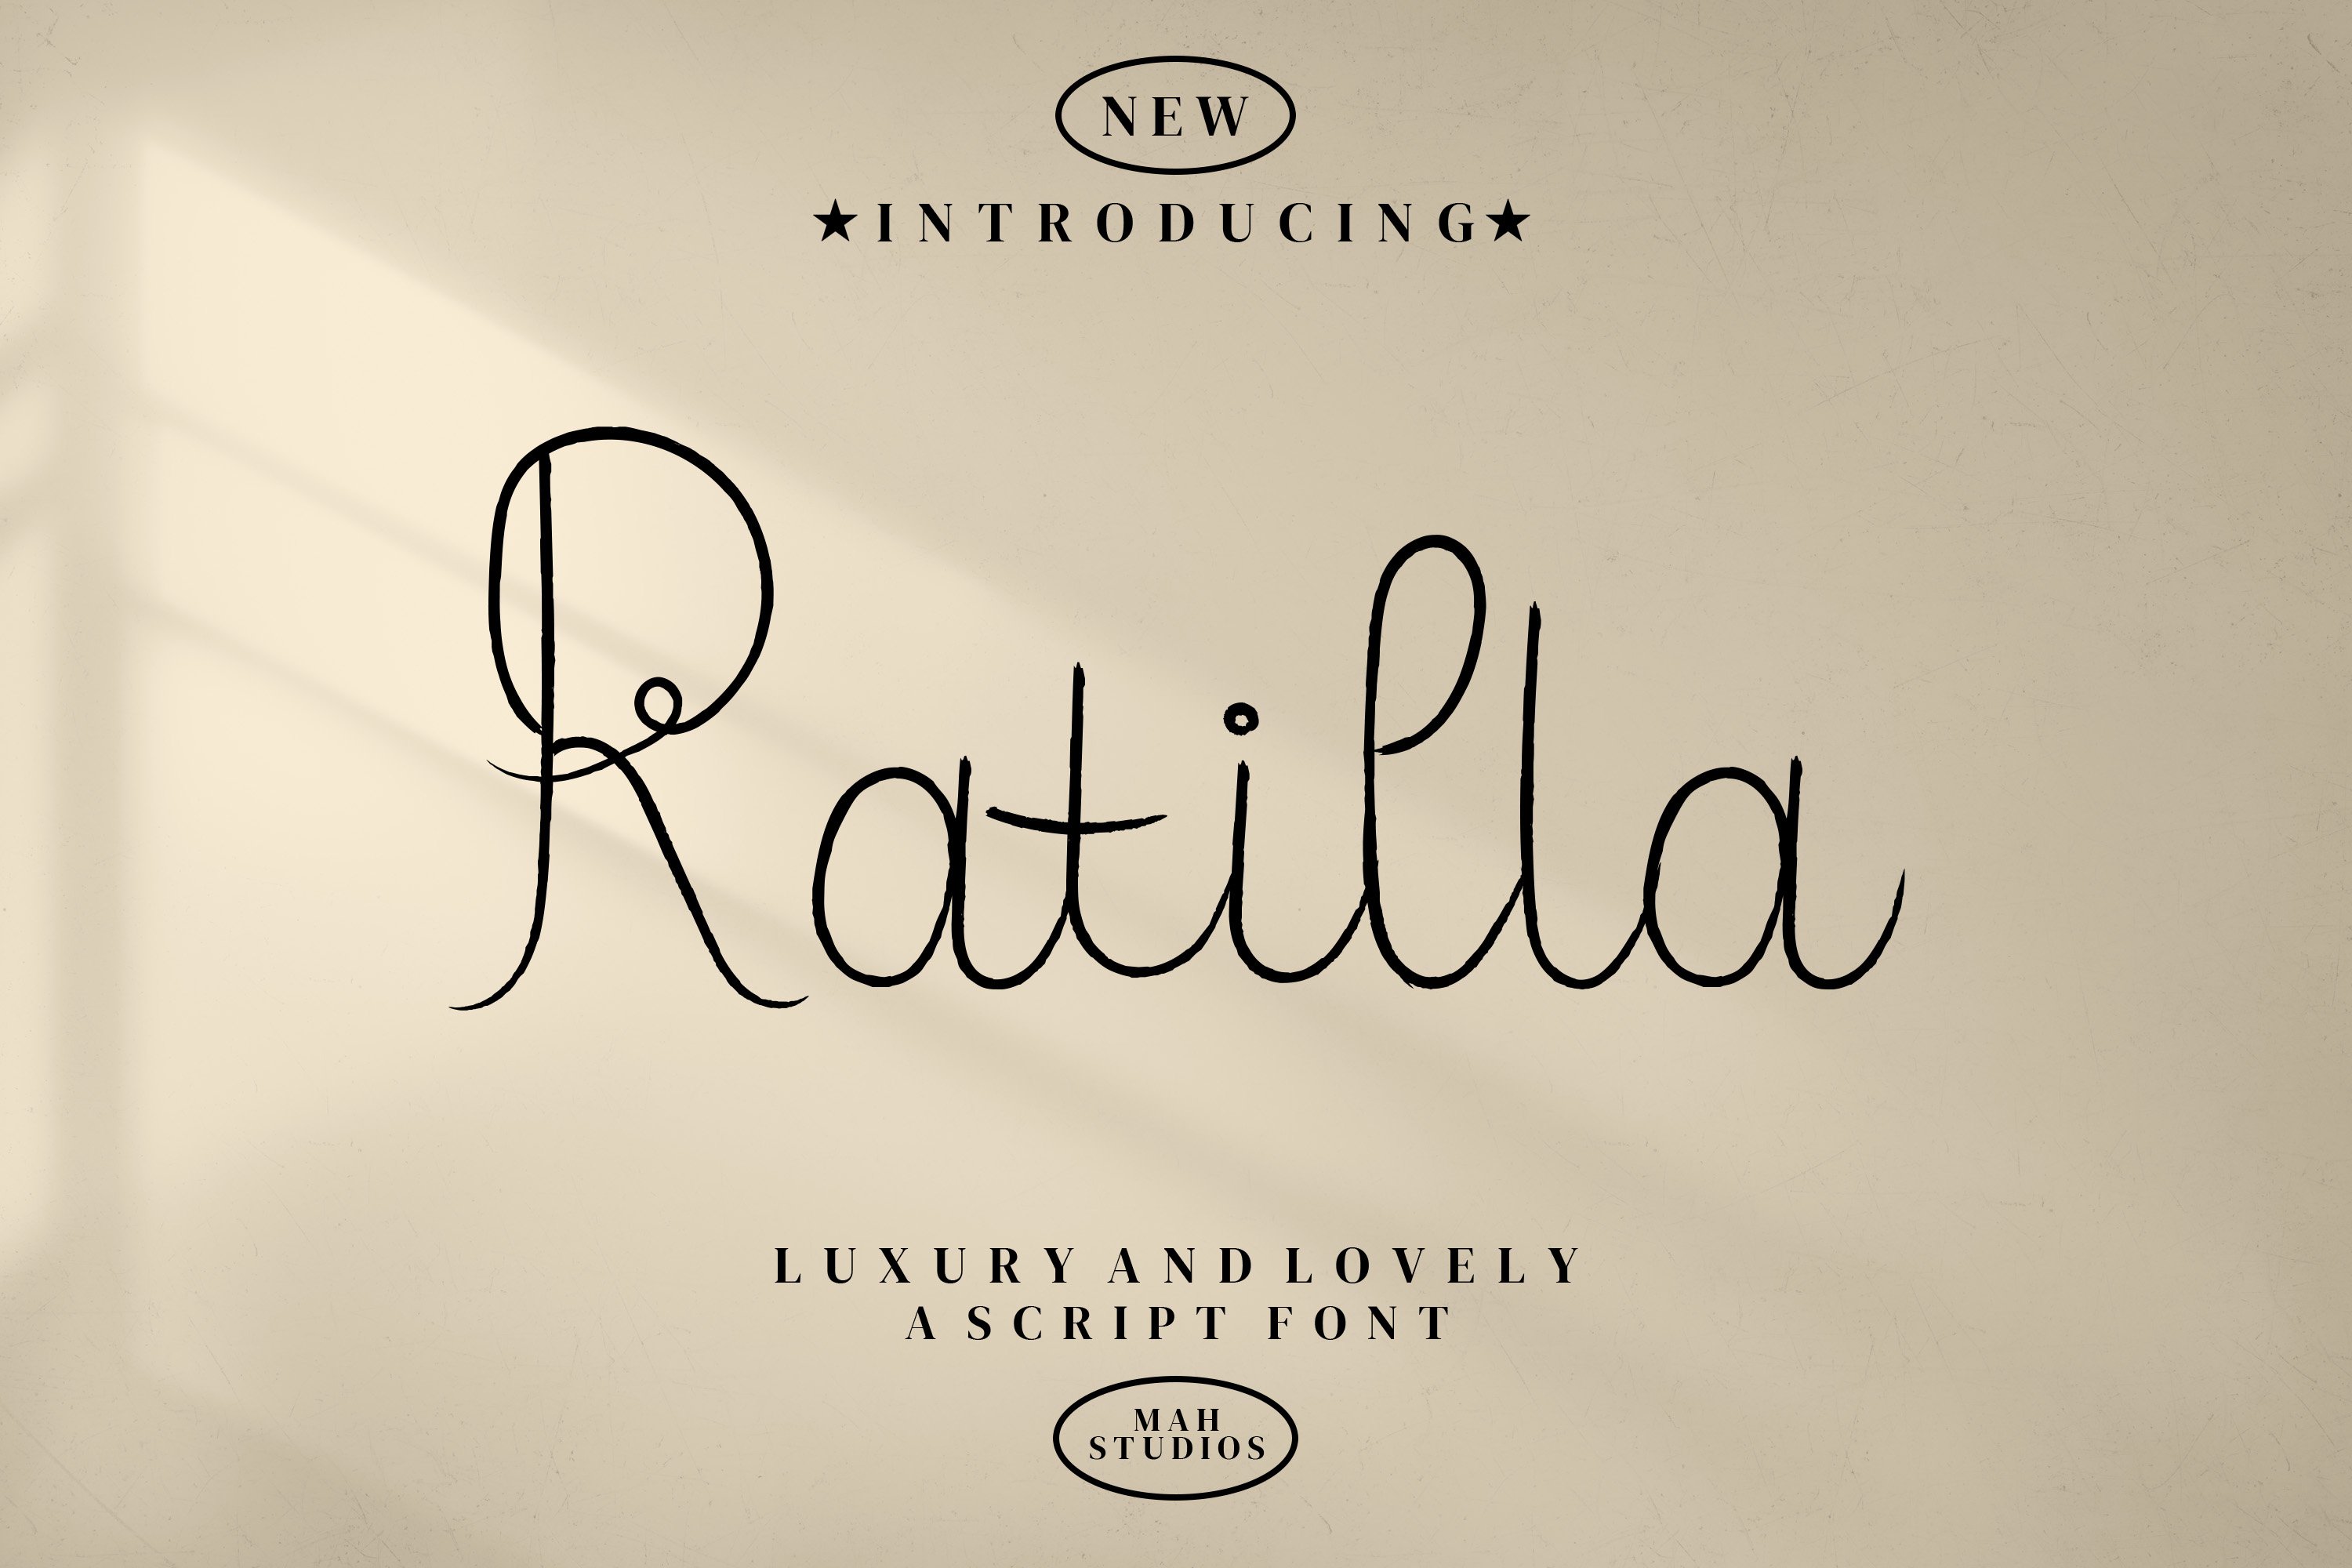 Ratilla Script Fontscover image.